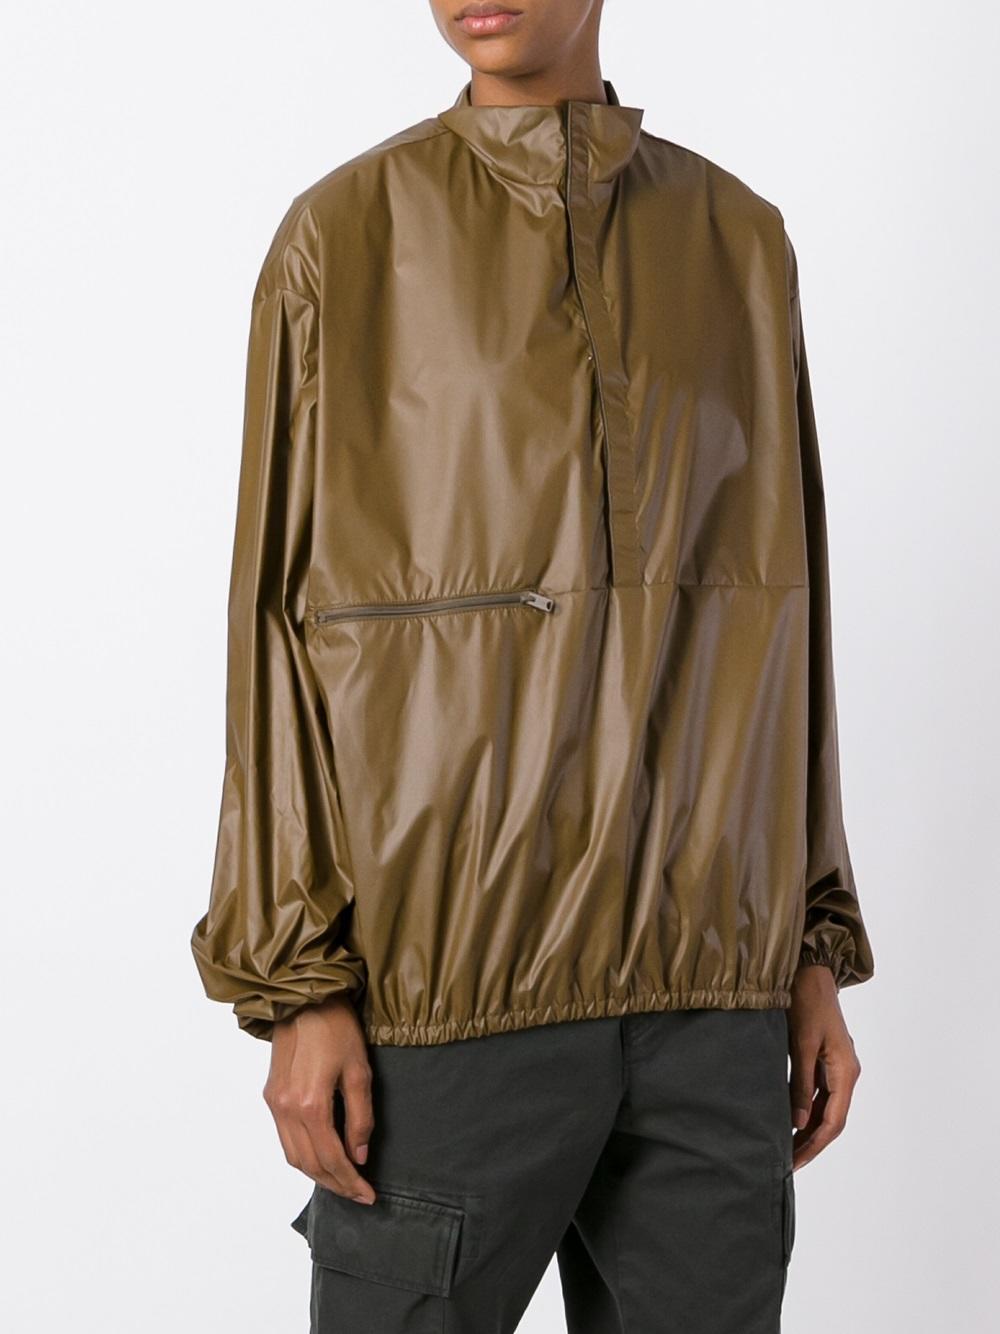 Yeezy Season 3 Windbreaker Jacket in Brown | Lyst